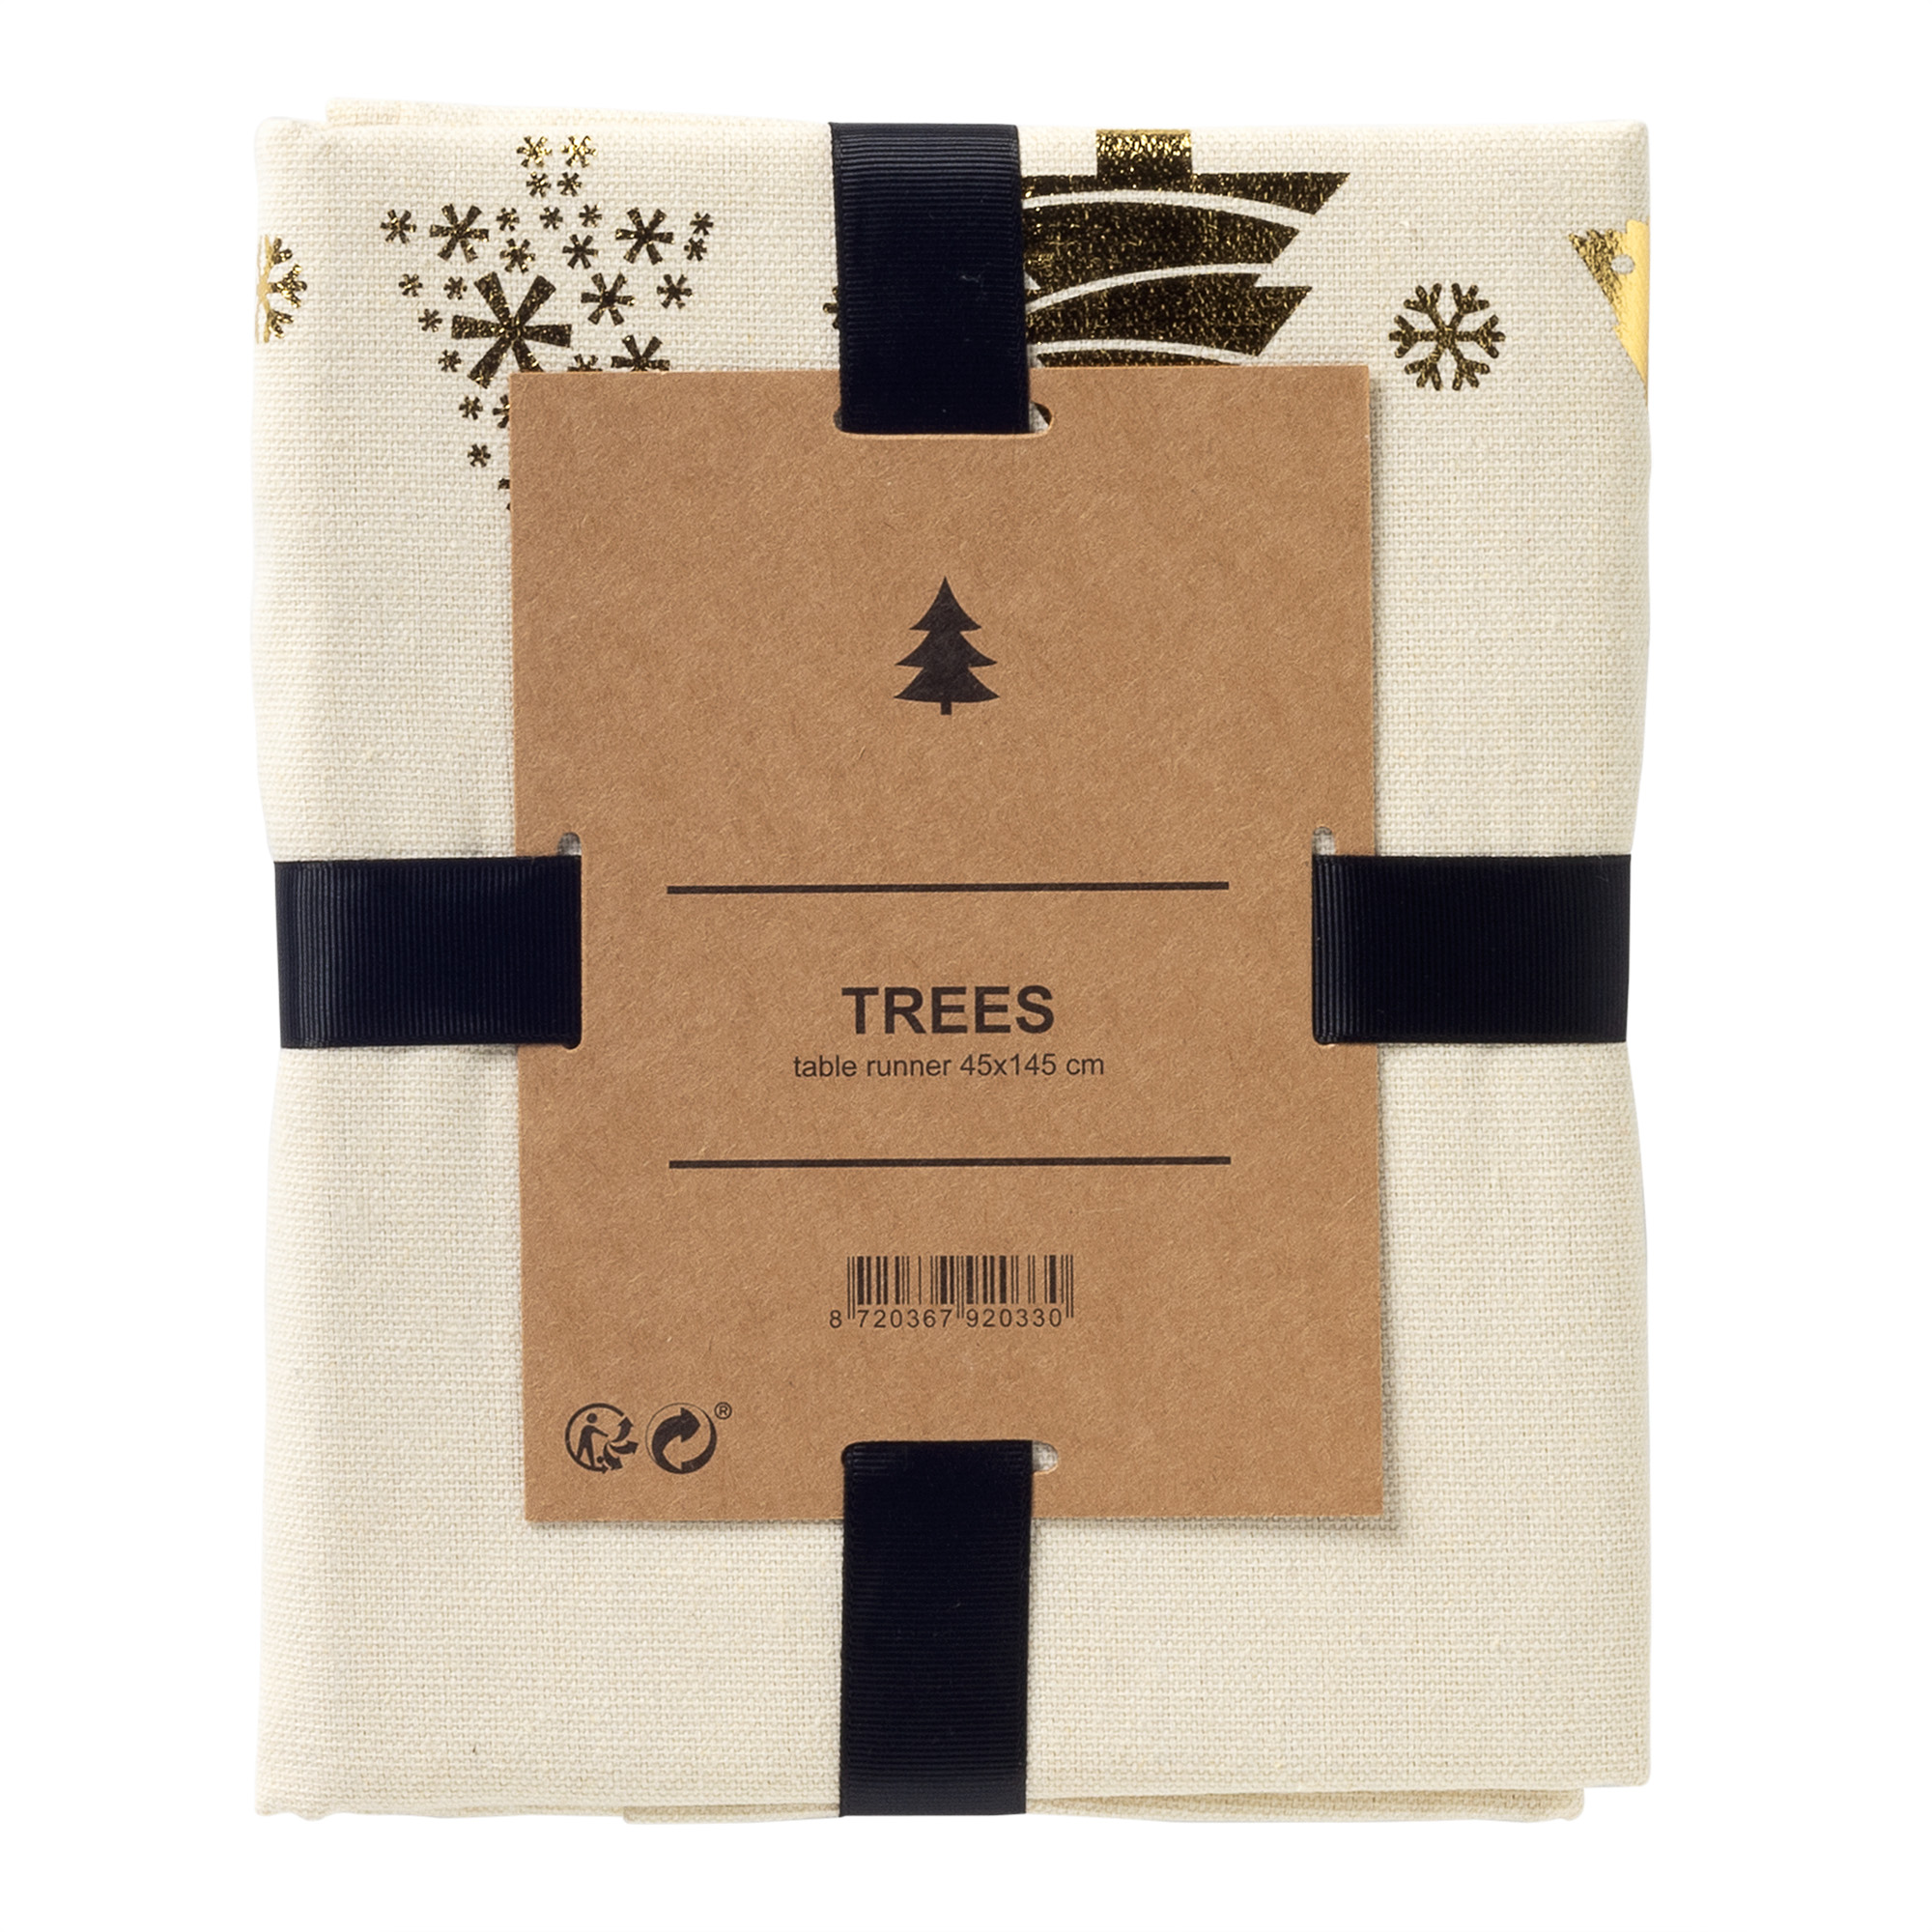 TREES - Tischläufer 45x145 cm - mit Weihnachtsbäumen - Whisper White – weiss